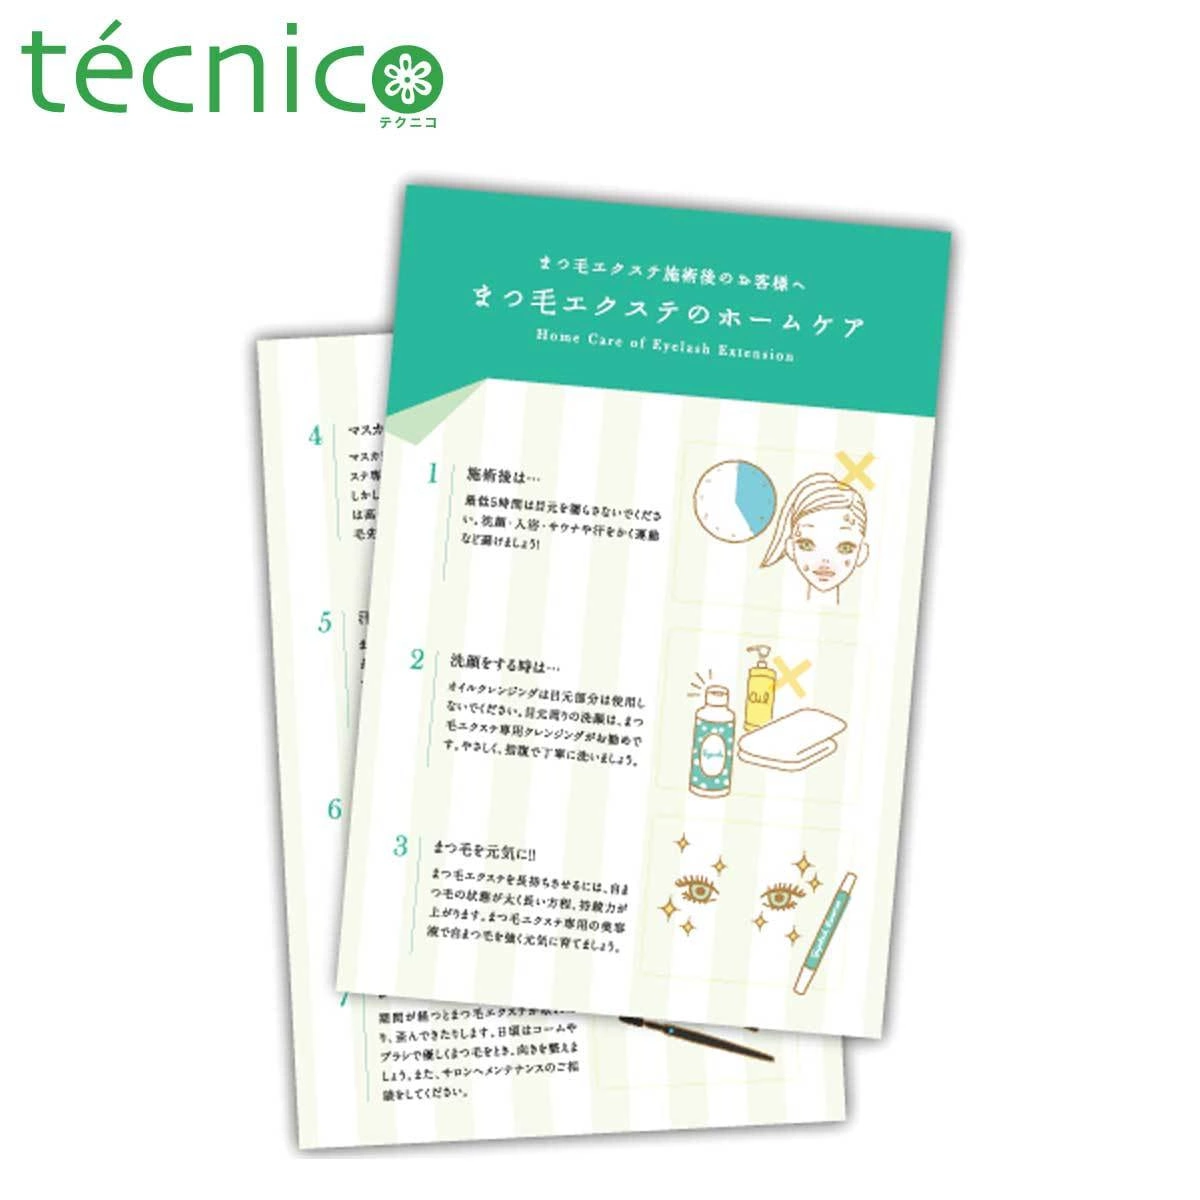 【tecnico】ホームケアカード 100枚セット